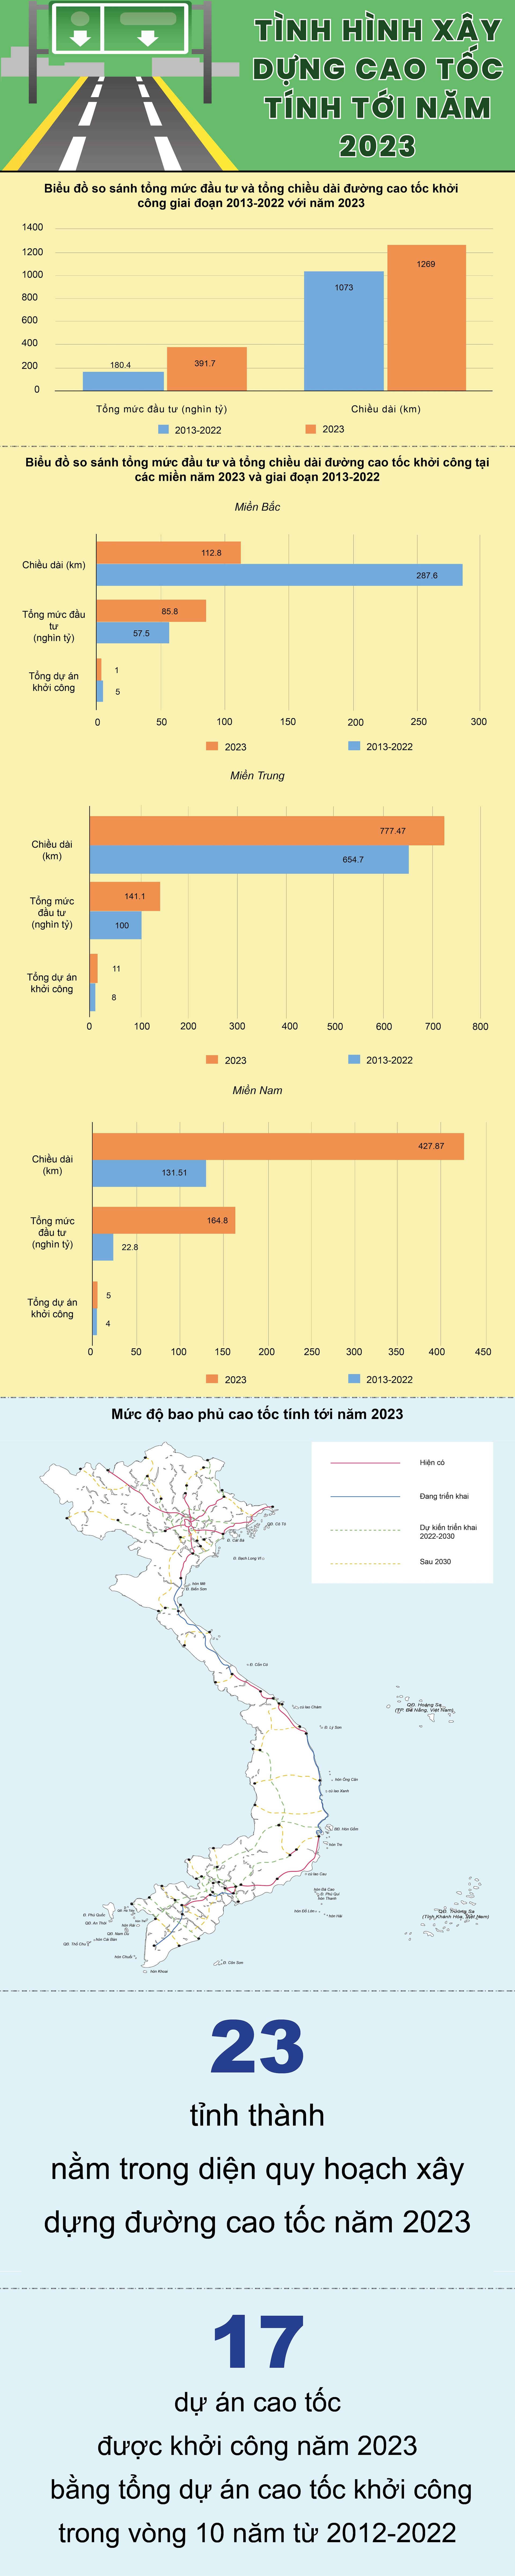 Infographic: &quot;Giật mình&quot; về số cao tốc khởi công năm 2023 bằng cả 10 năm trước cộng lại - Ảnh 1.